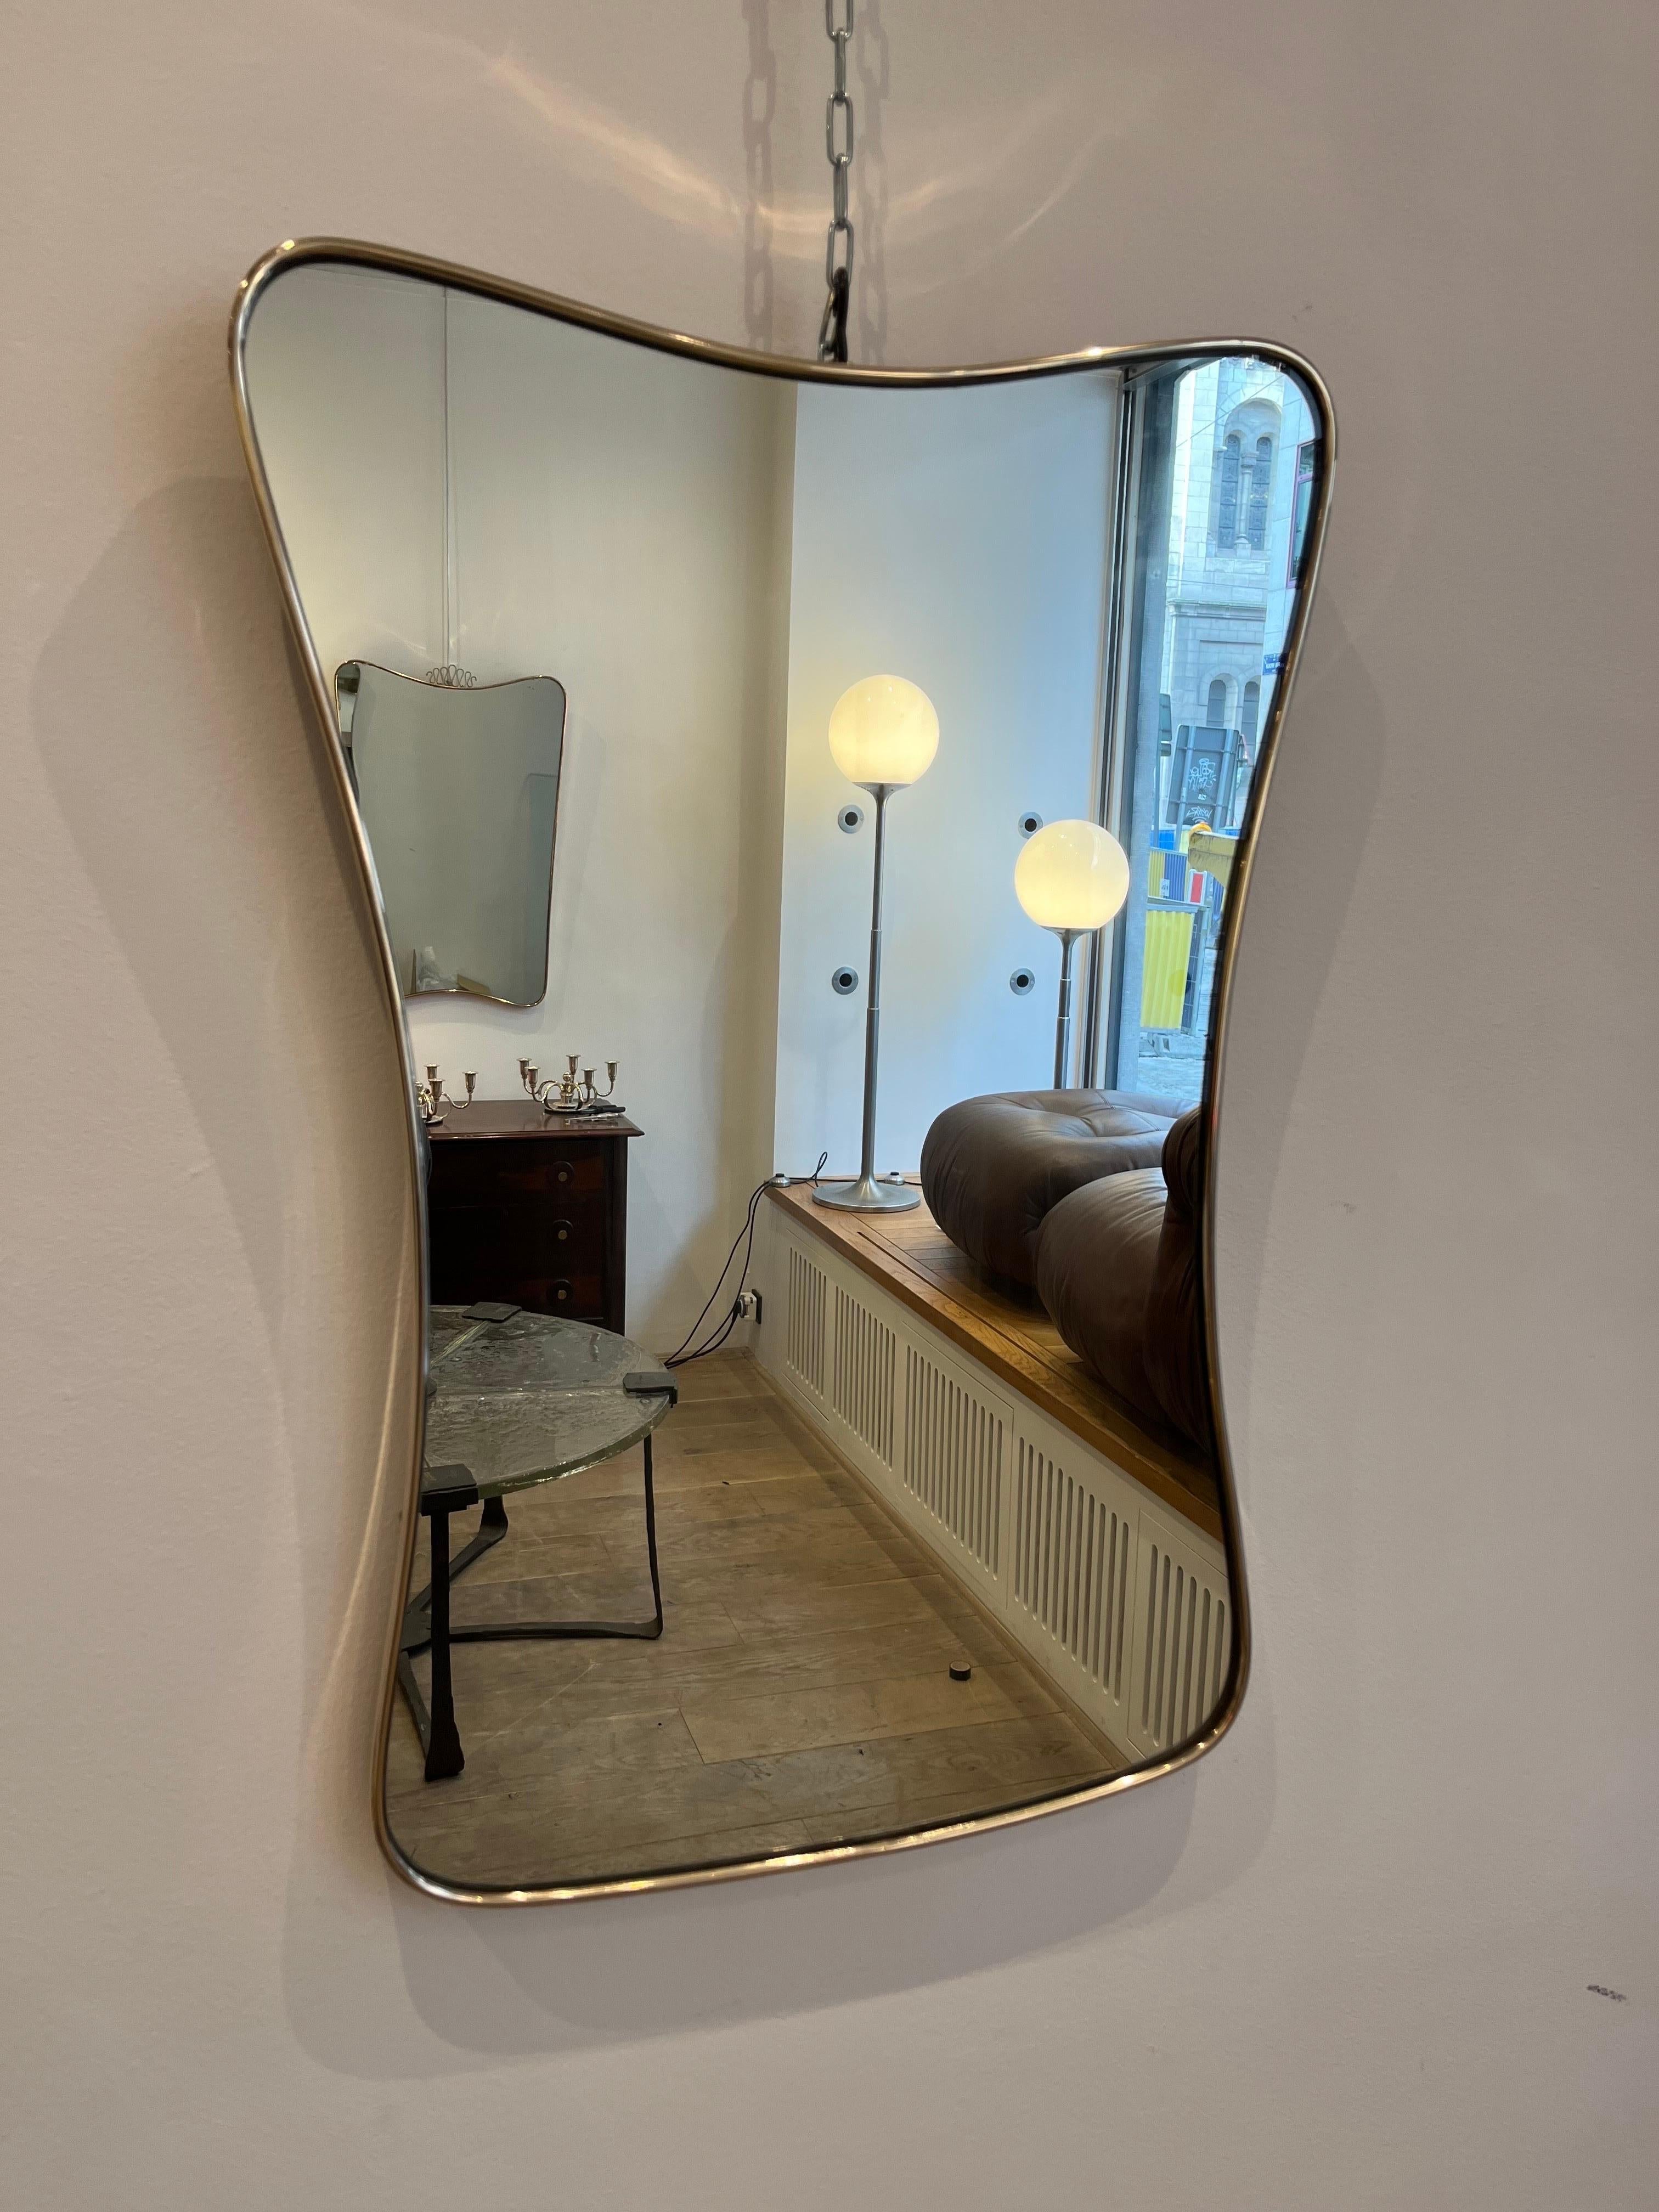 Elegant miroir italien en laiton en forme de diabolo stylisé. Le miroir date des années 1950-60. Il s'inscrit clairement dans le style des miroirs que Gio Ponti, le plus célèbre architecte&designer italien, a conçu à cette époque. Le laiton vient